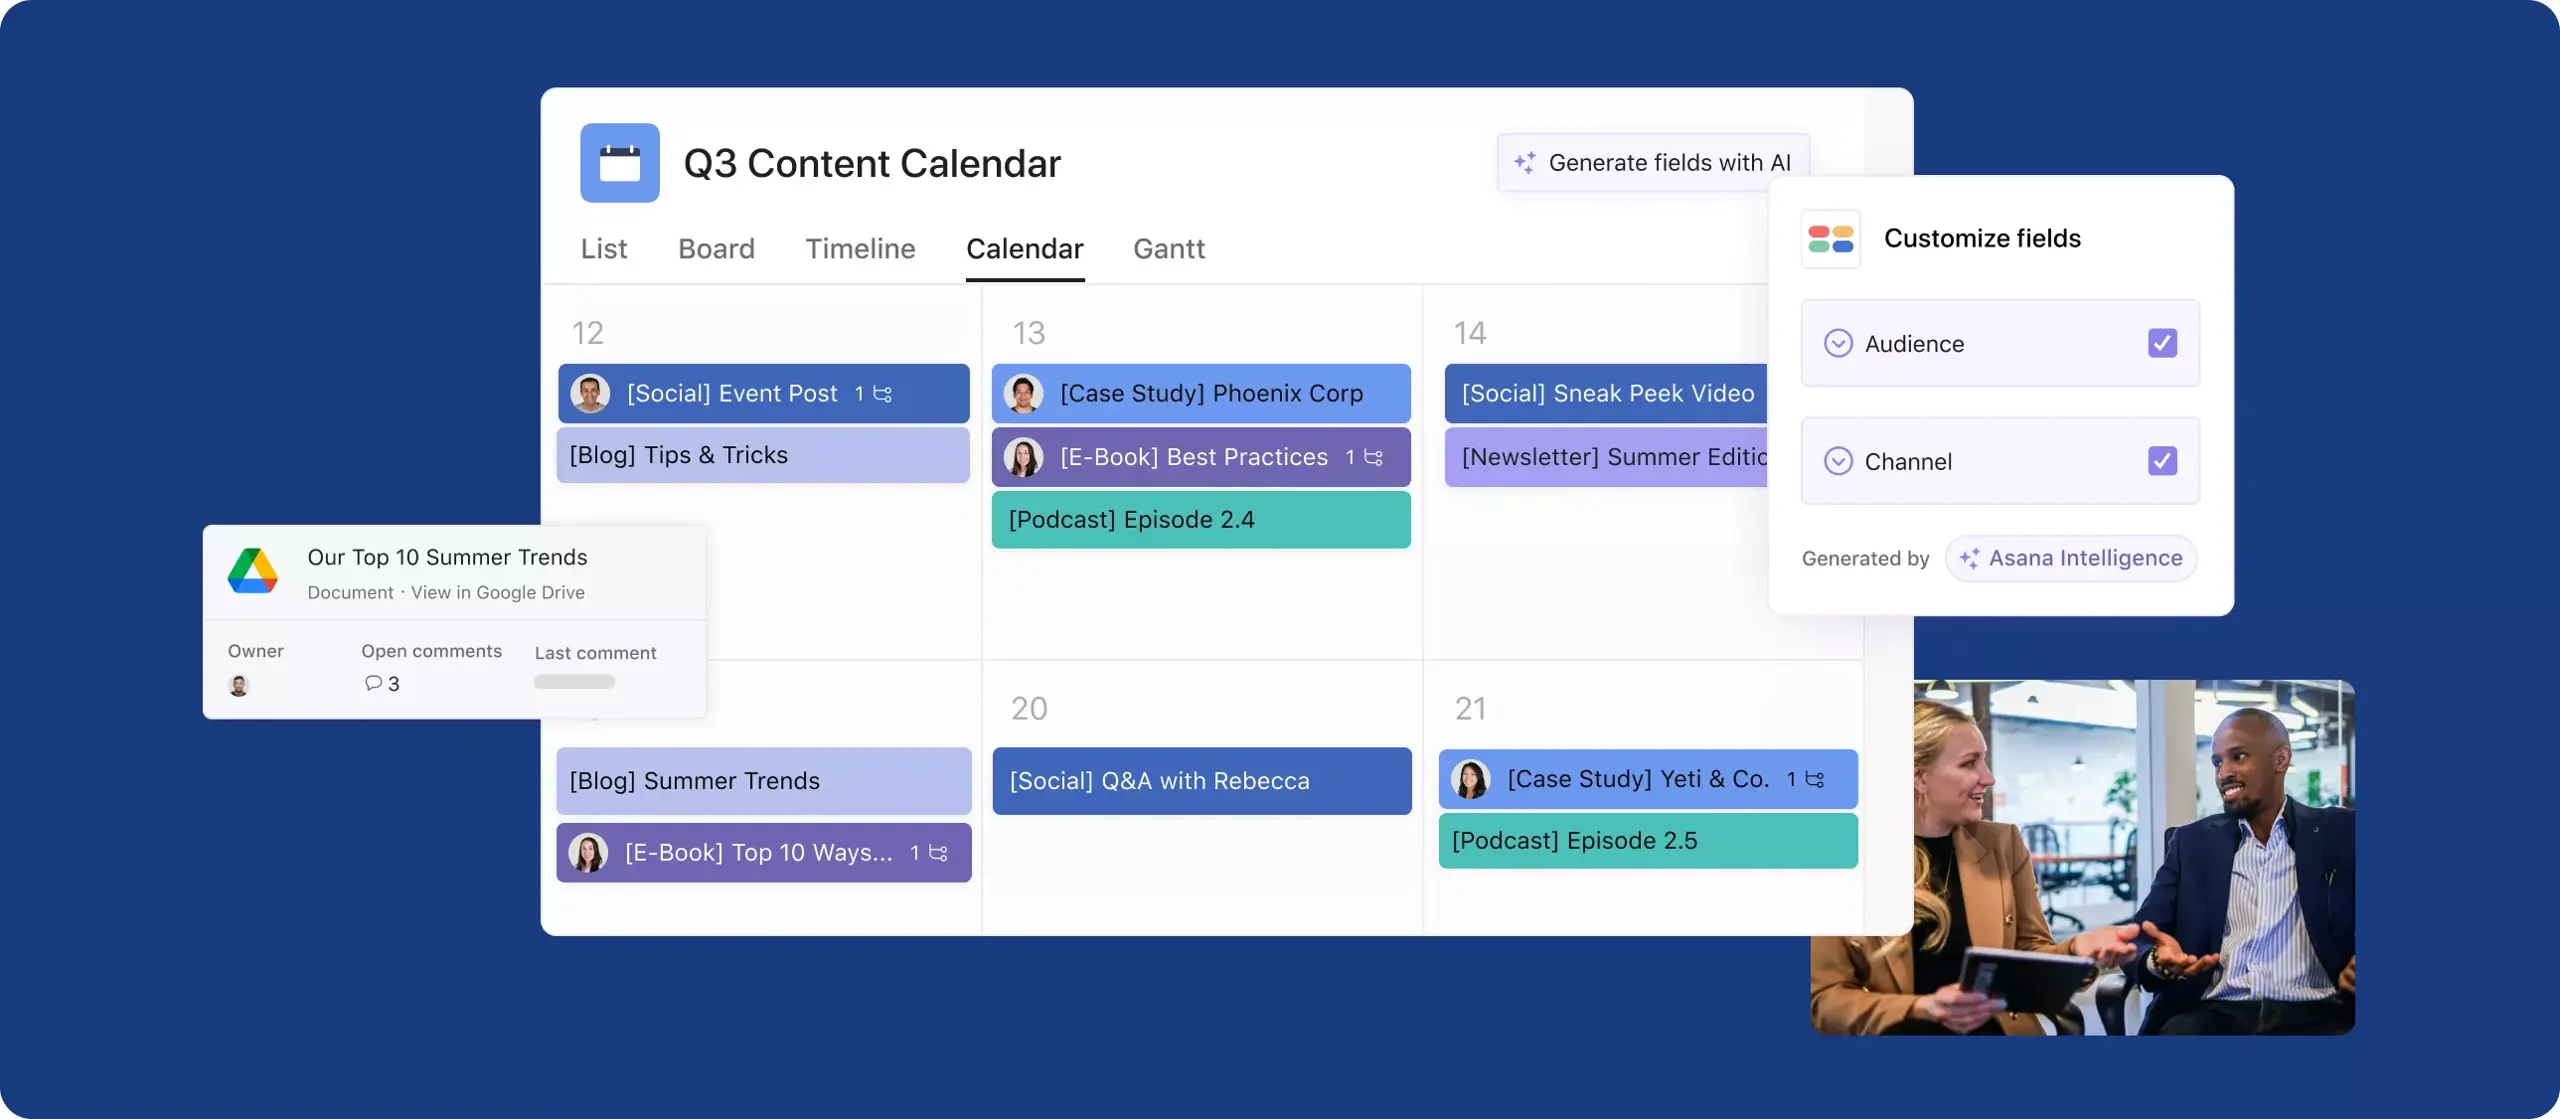 Gambar hero kalender konten: UI produk abstrak